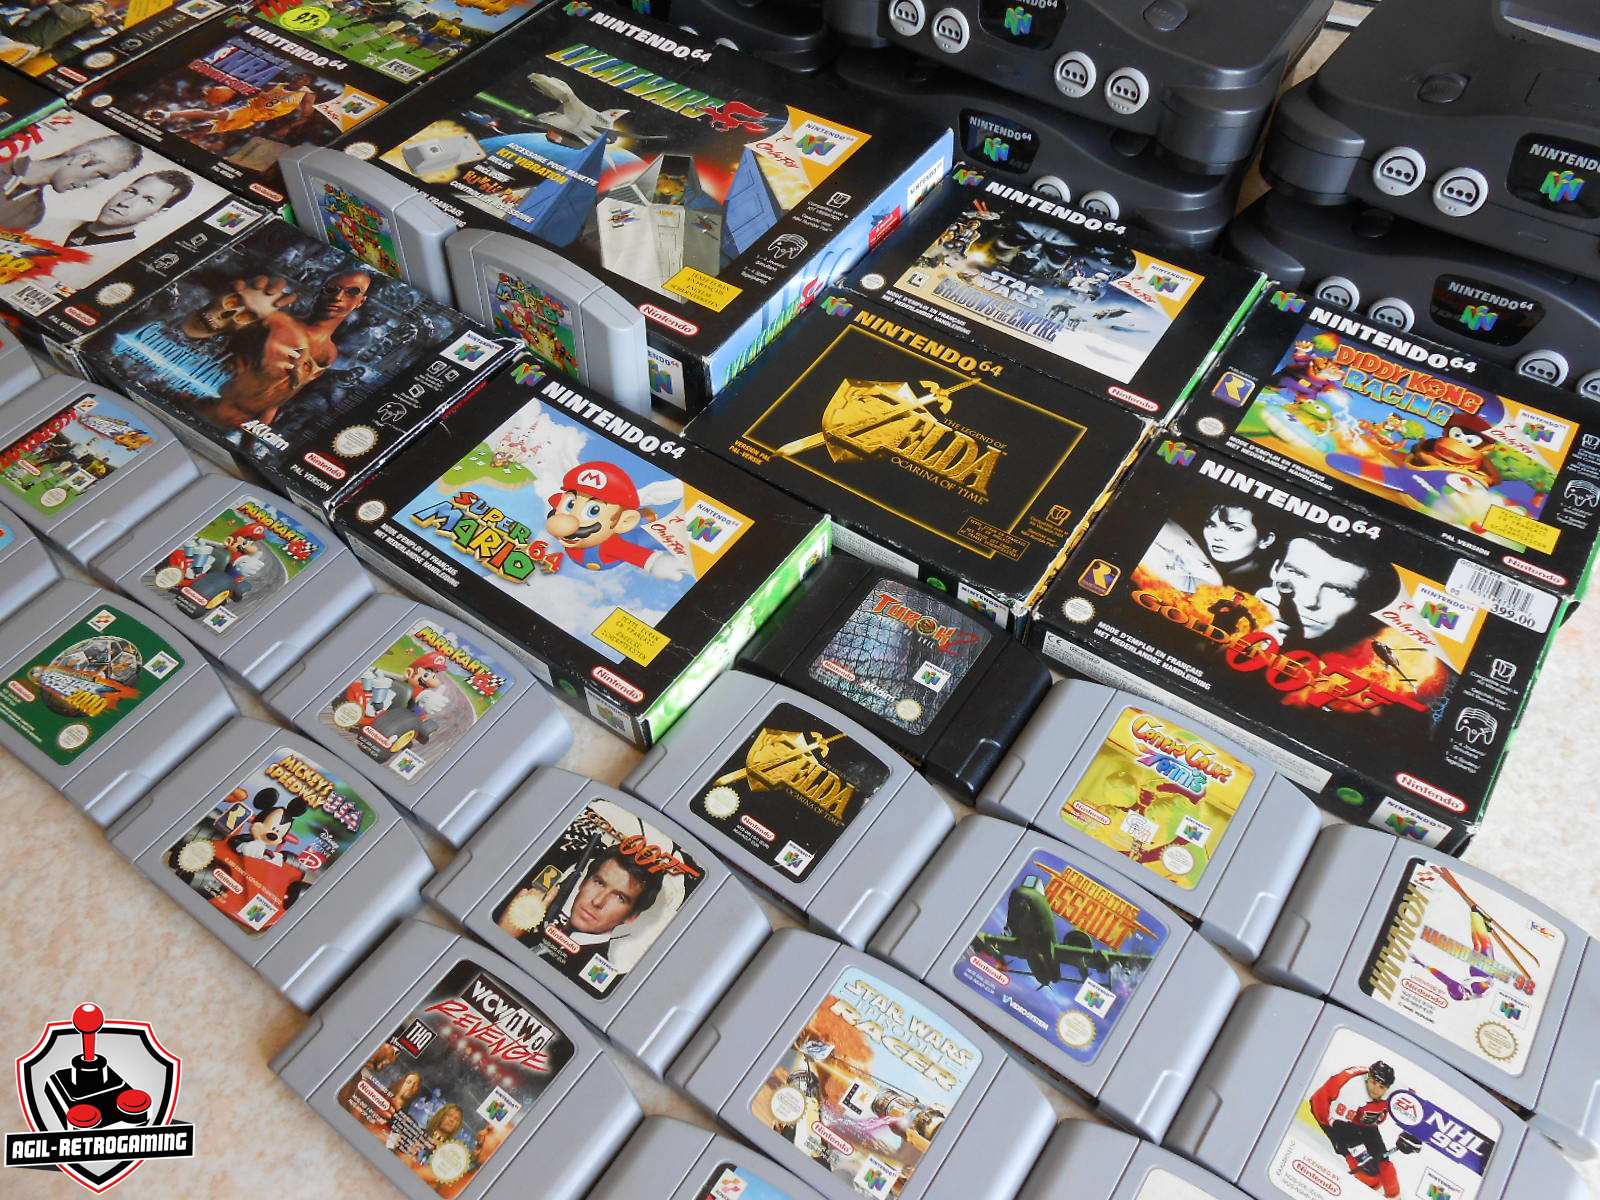 Jeux N64 en boite : Zelda, Mario, Goldeneye